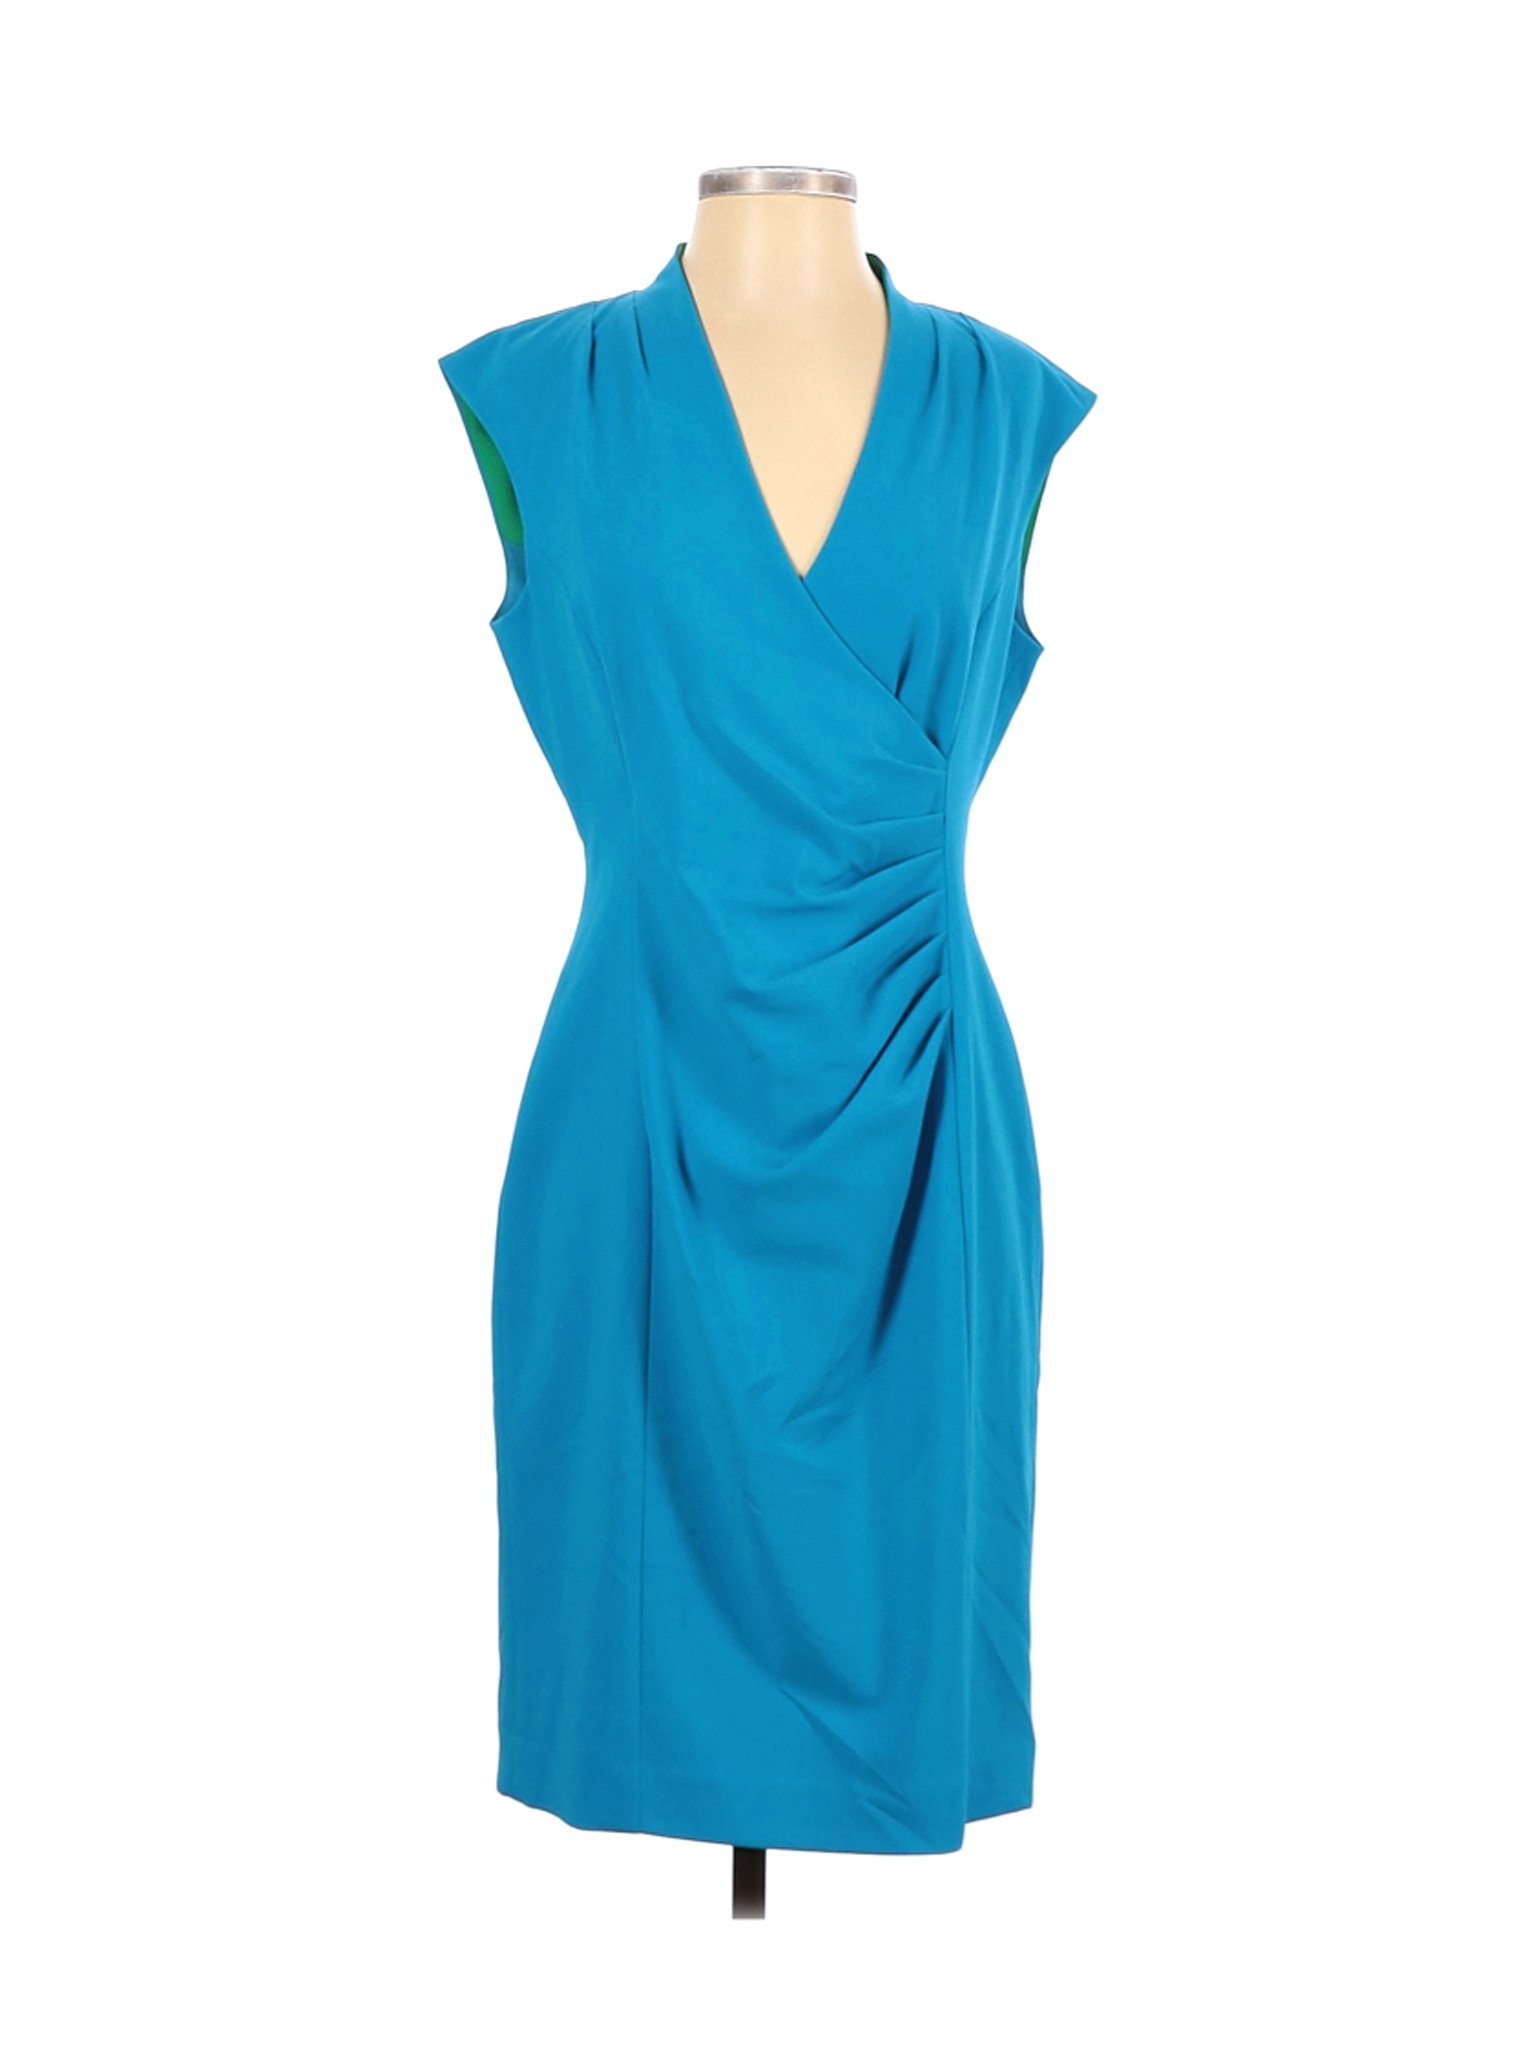 Calvin Klein Women Blue Cocktail Dress 8 | eBay